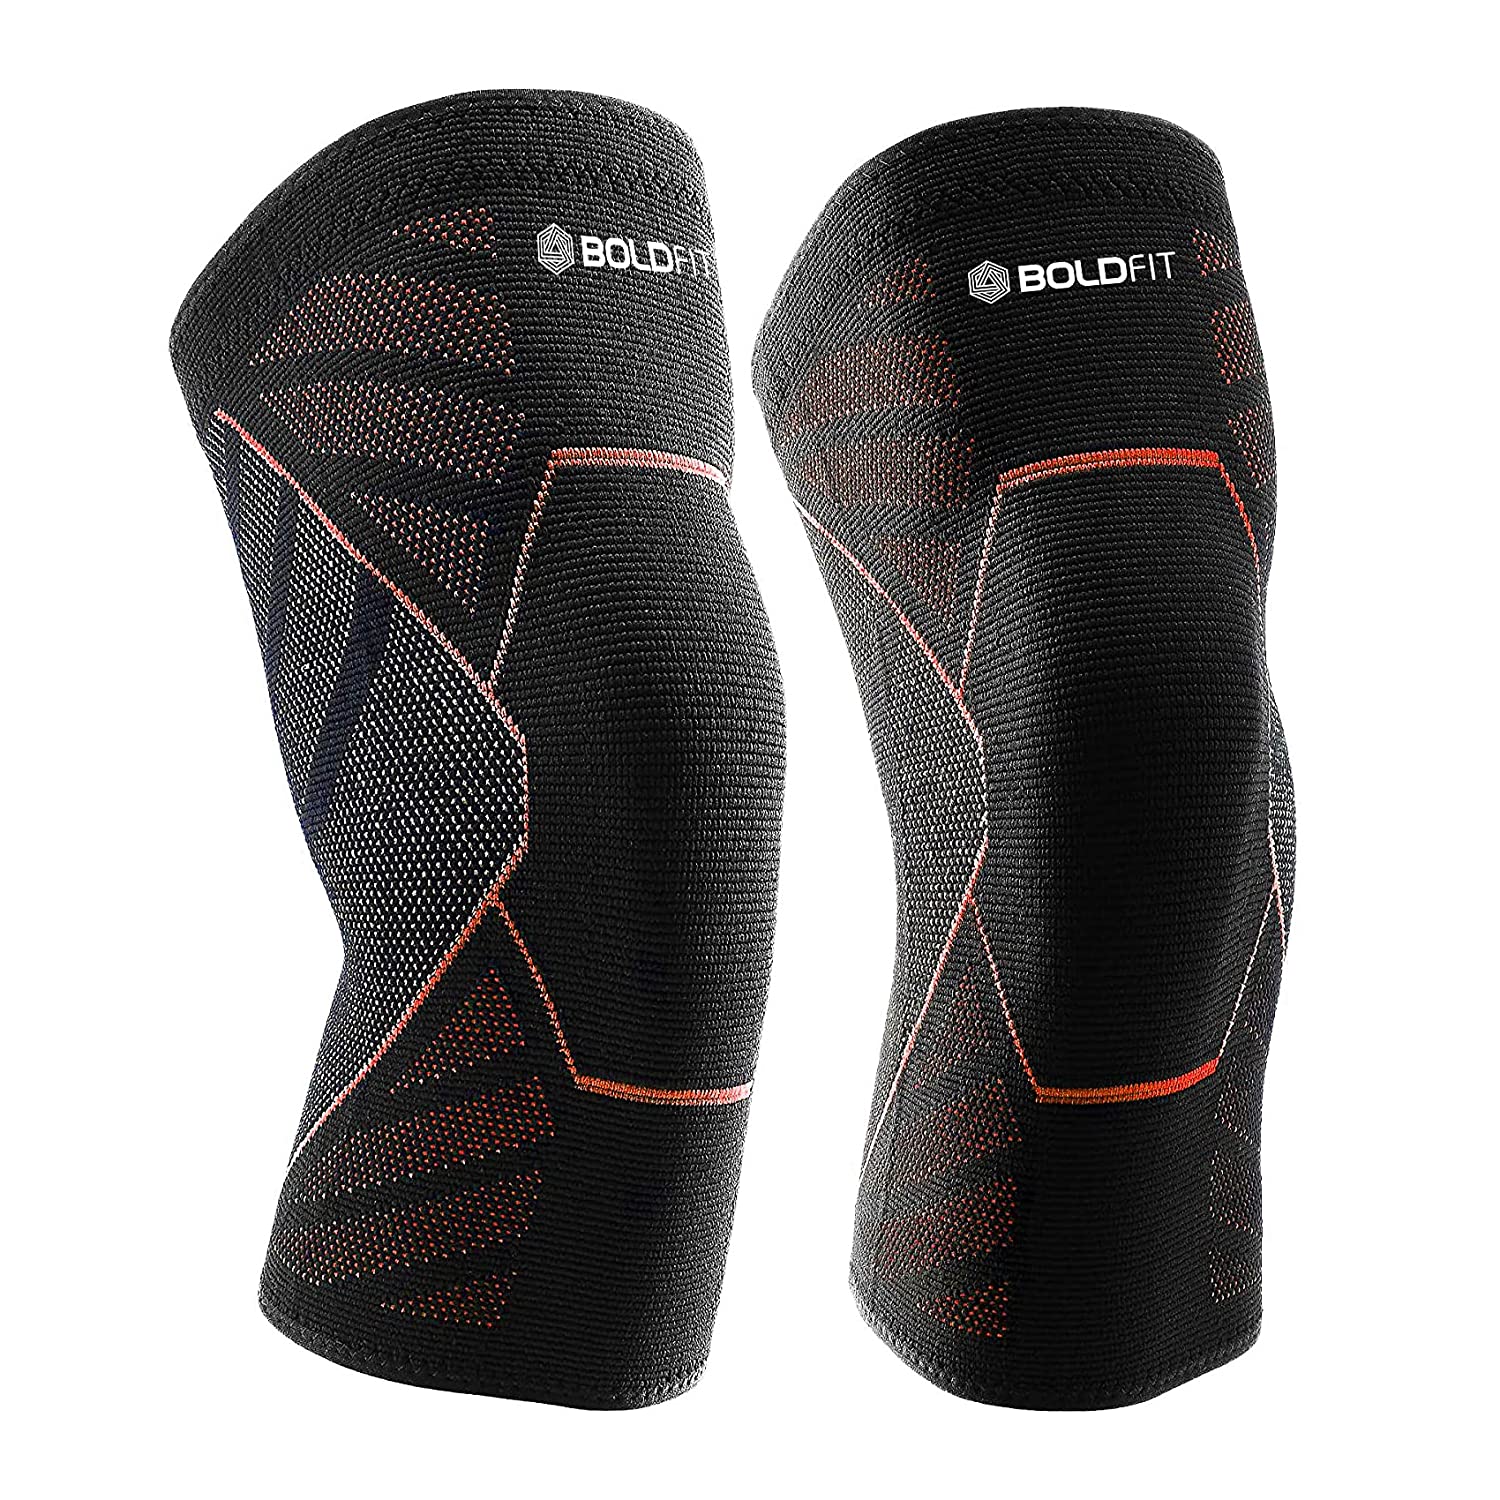 boldfit-knee-support-cap